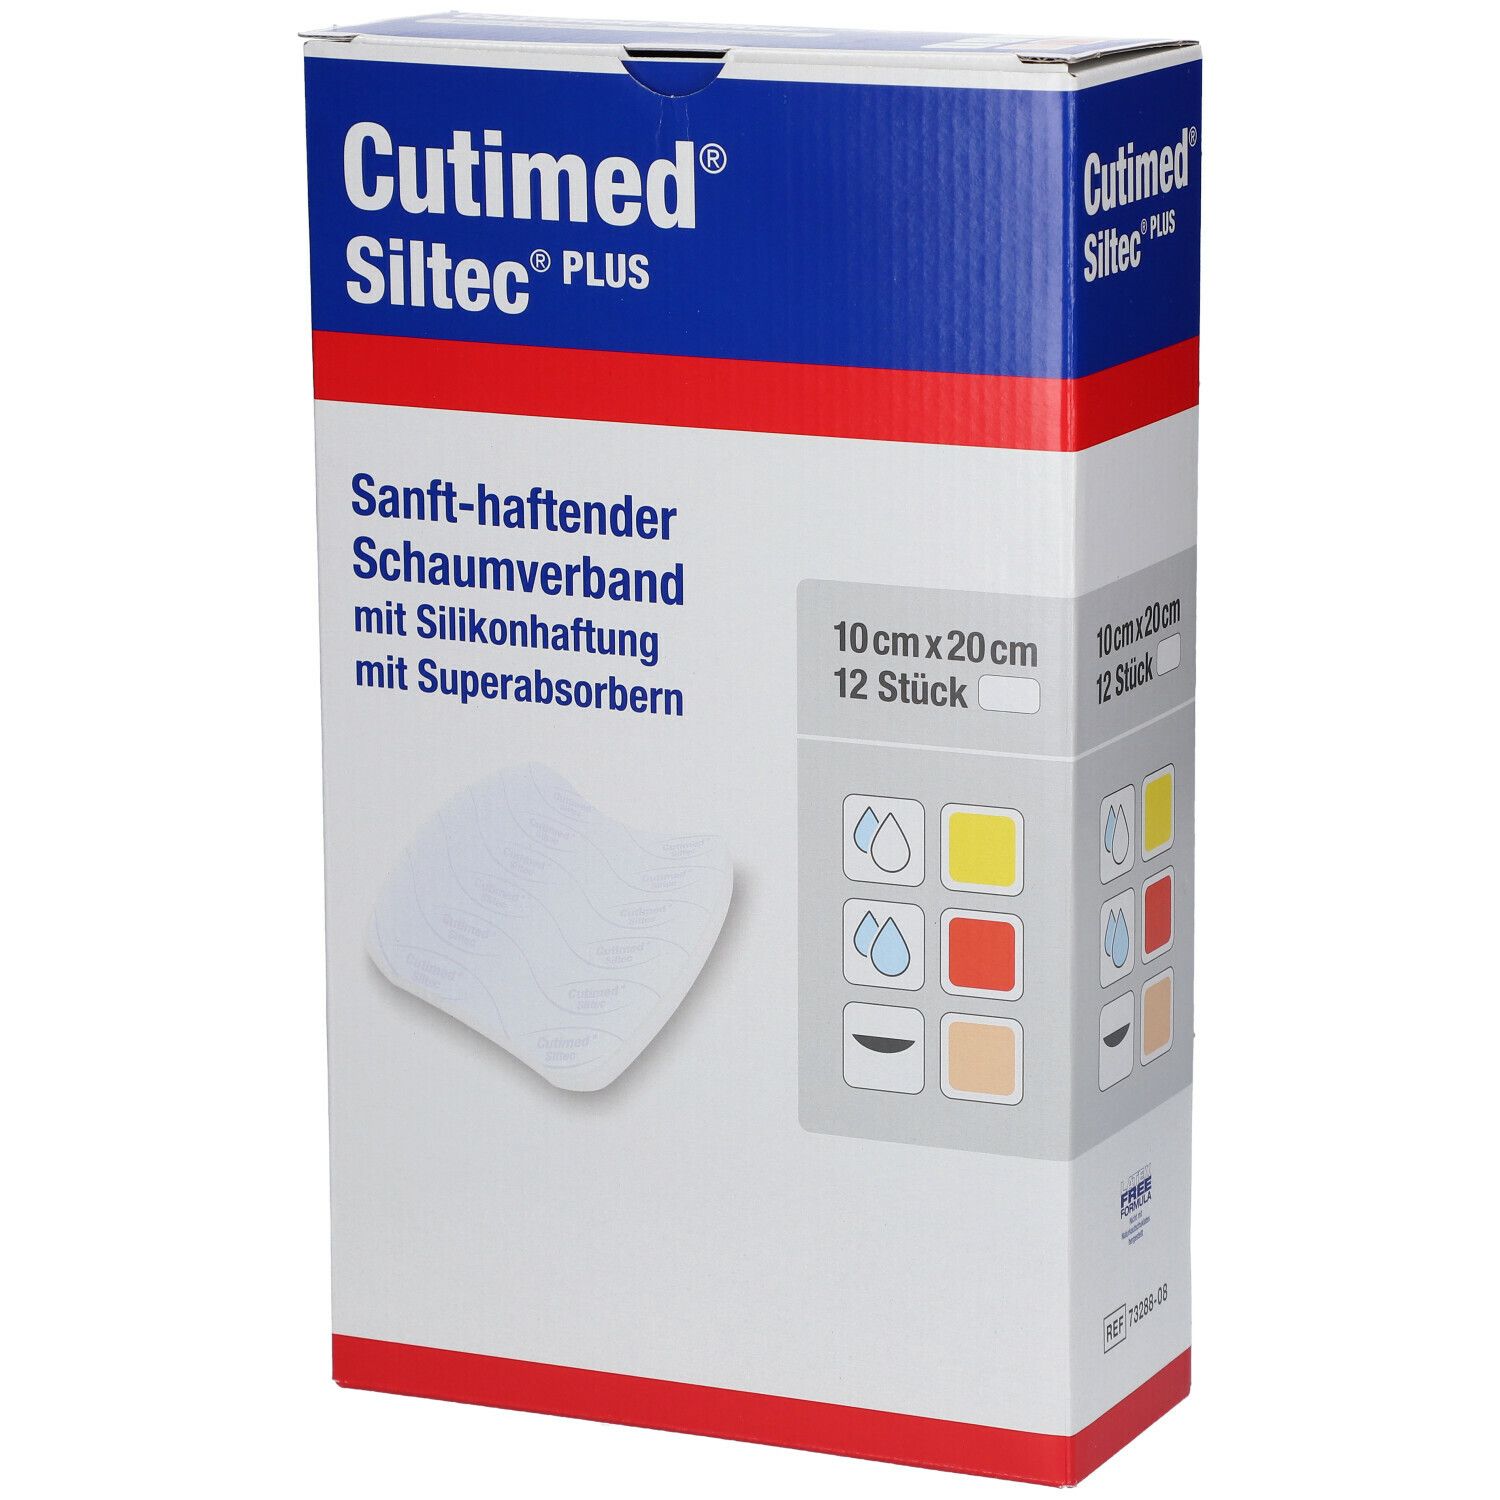 Cutimed® Siltec Plus 10 cm x 20 cm